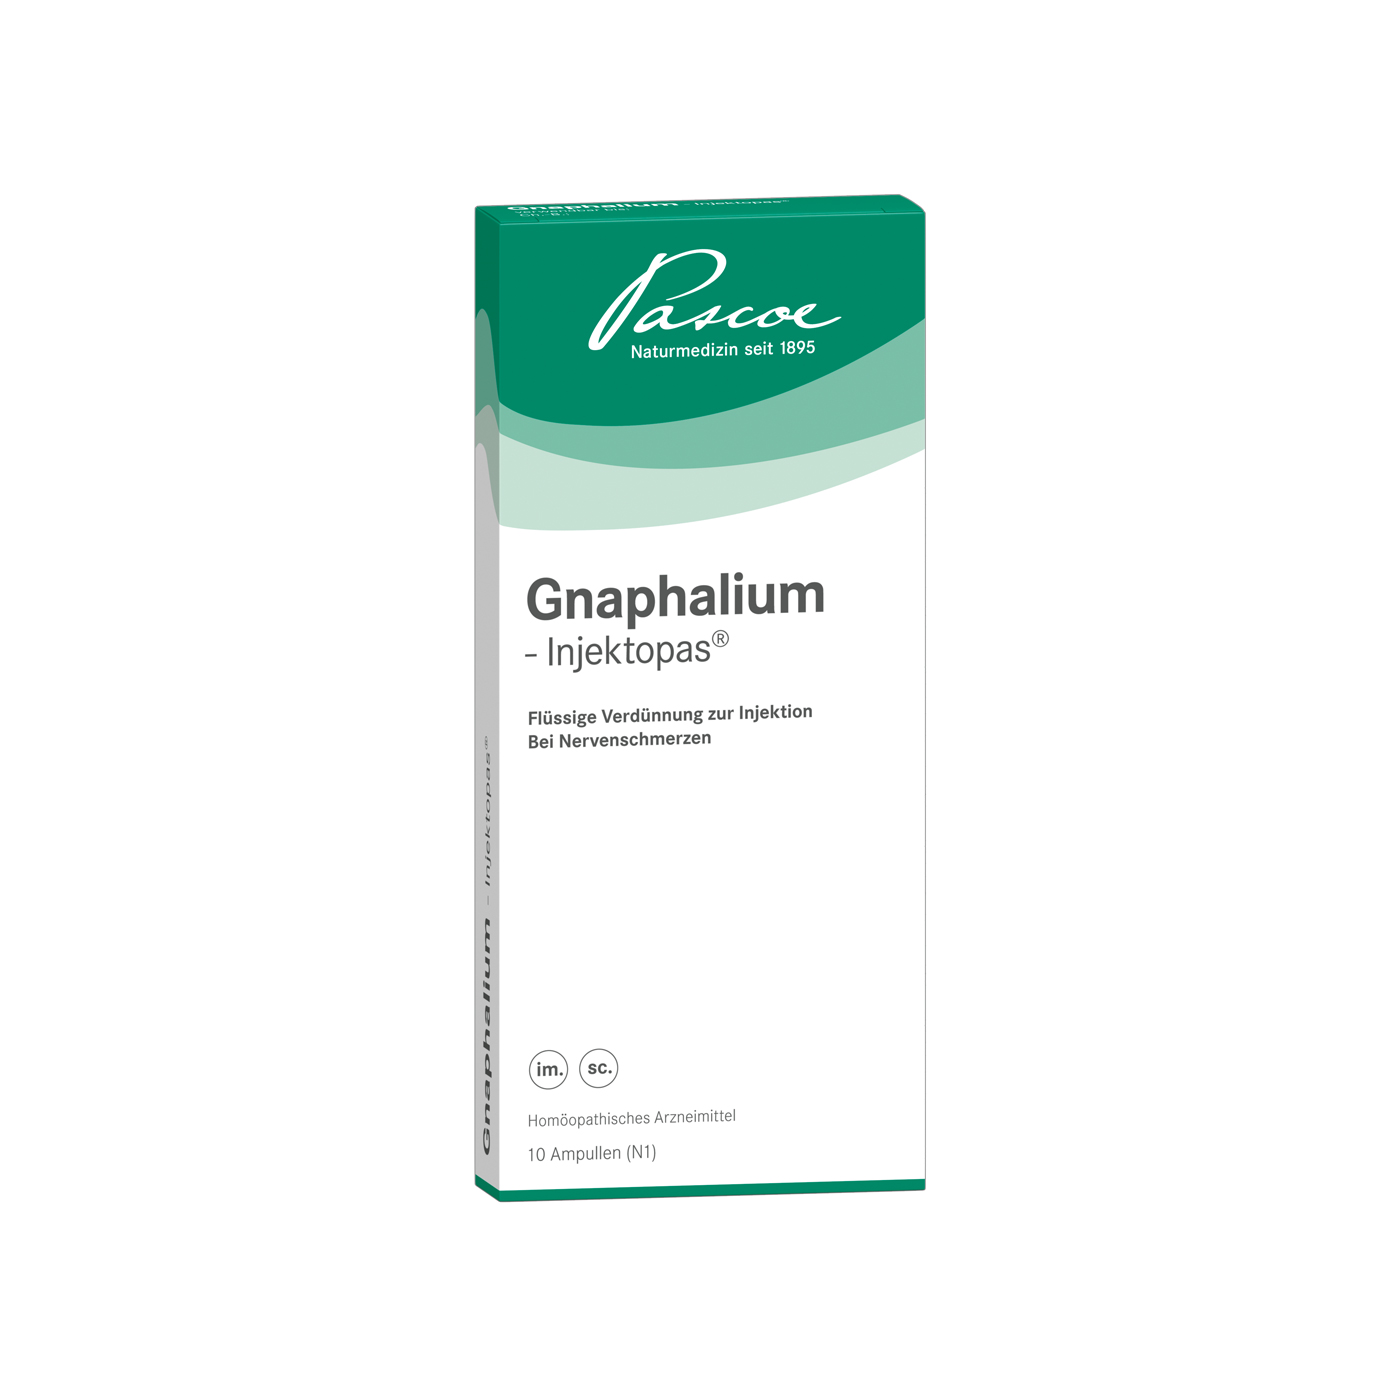 Gnaphalium-Injektopas 10 x 2 ml Packshot PZN 11186031